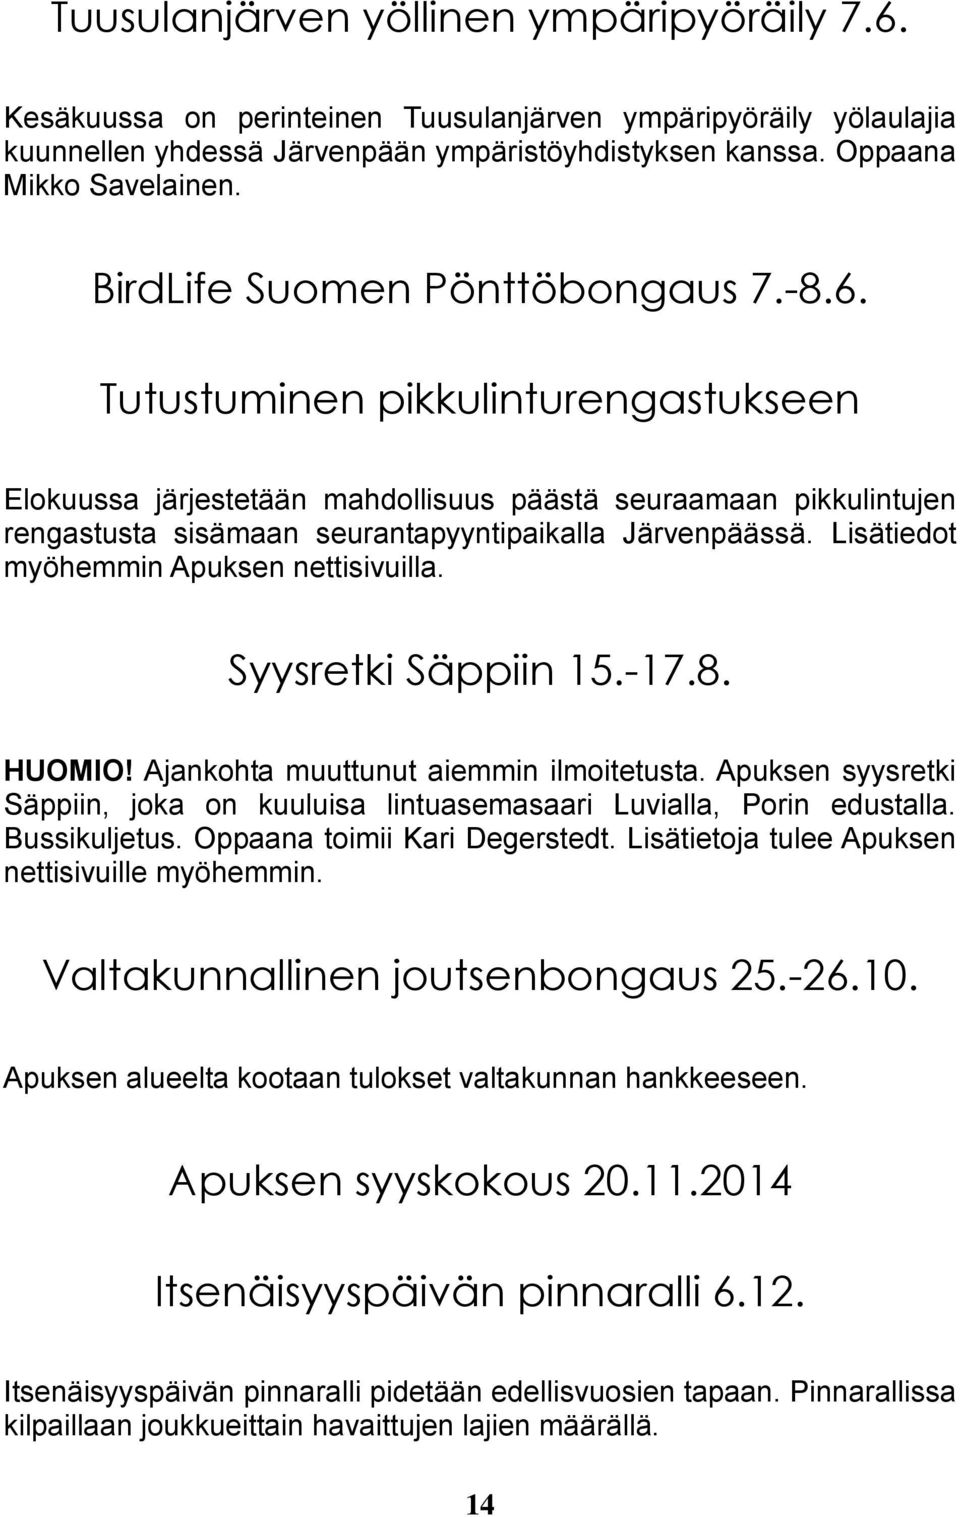 Lisätiedot myöhemmin Apuksen nettisivuilla. Syysretki Säppiin 15.-17.8. HUOMIO! Ajankohta muuttunut aiemmin ilmoitetusta.